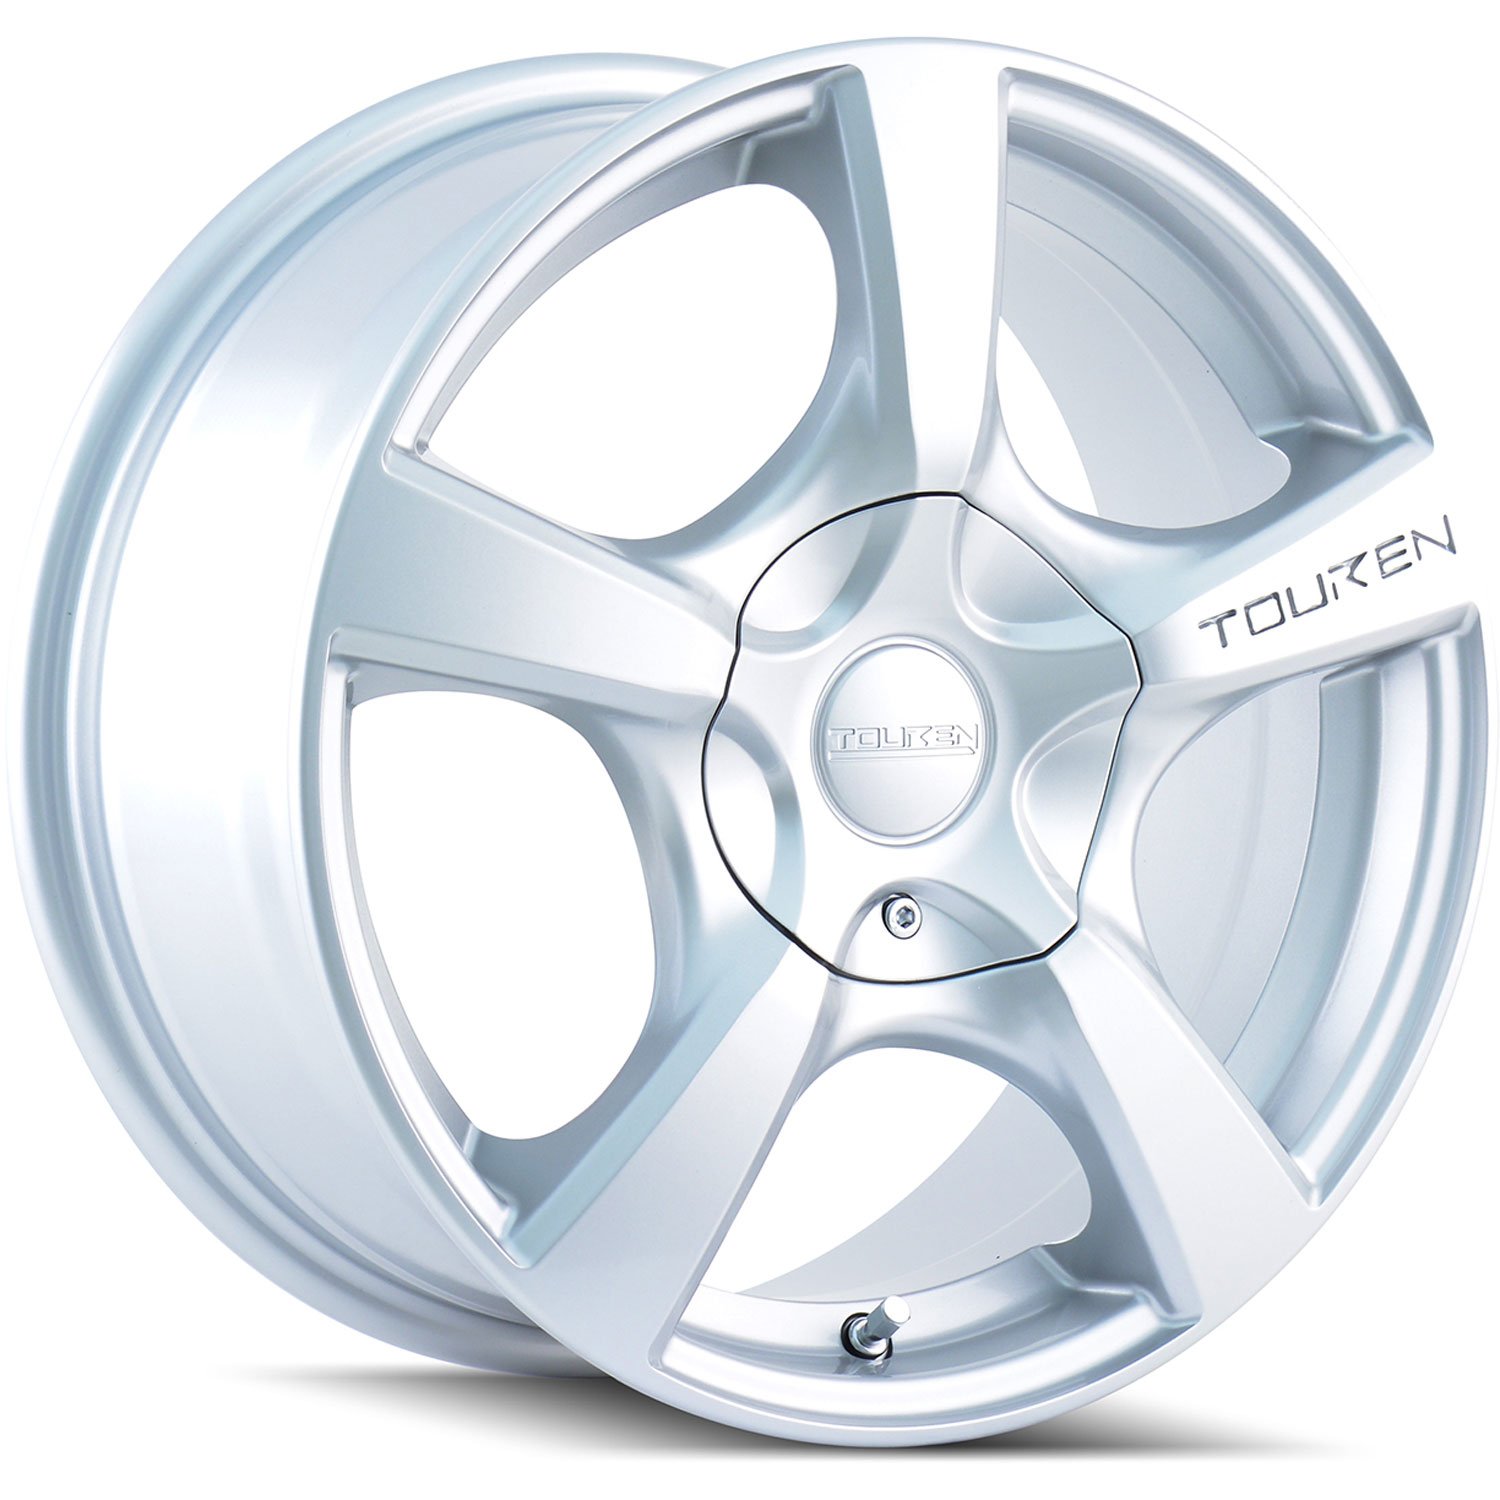 Touren TR9 Series Wheel Size: 17" x 7"